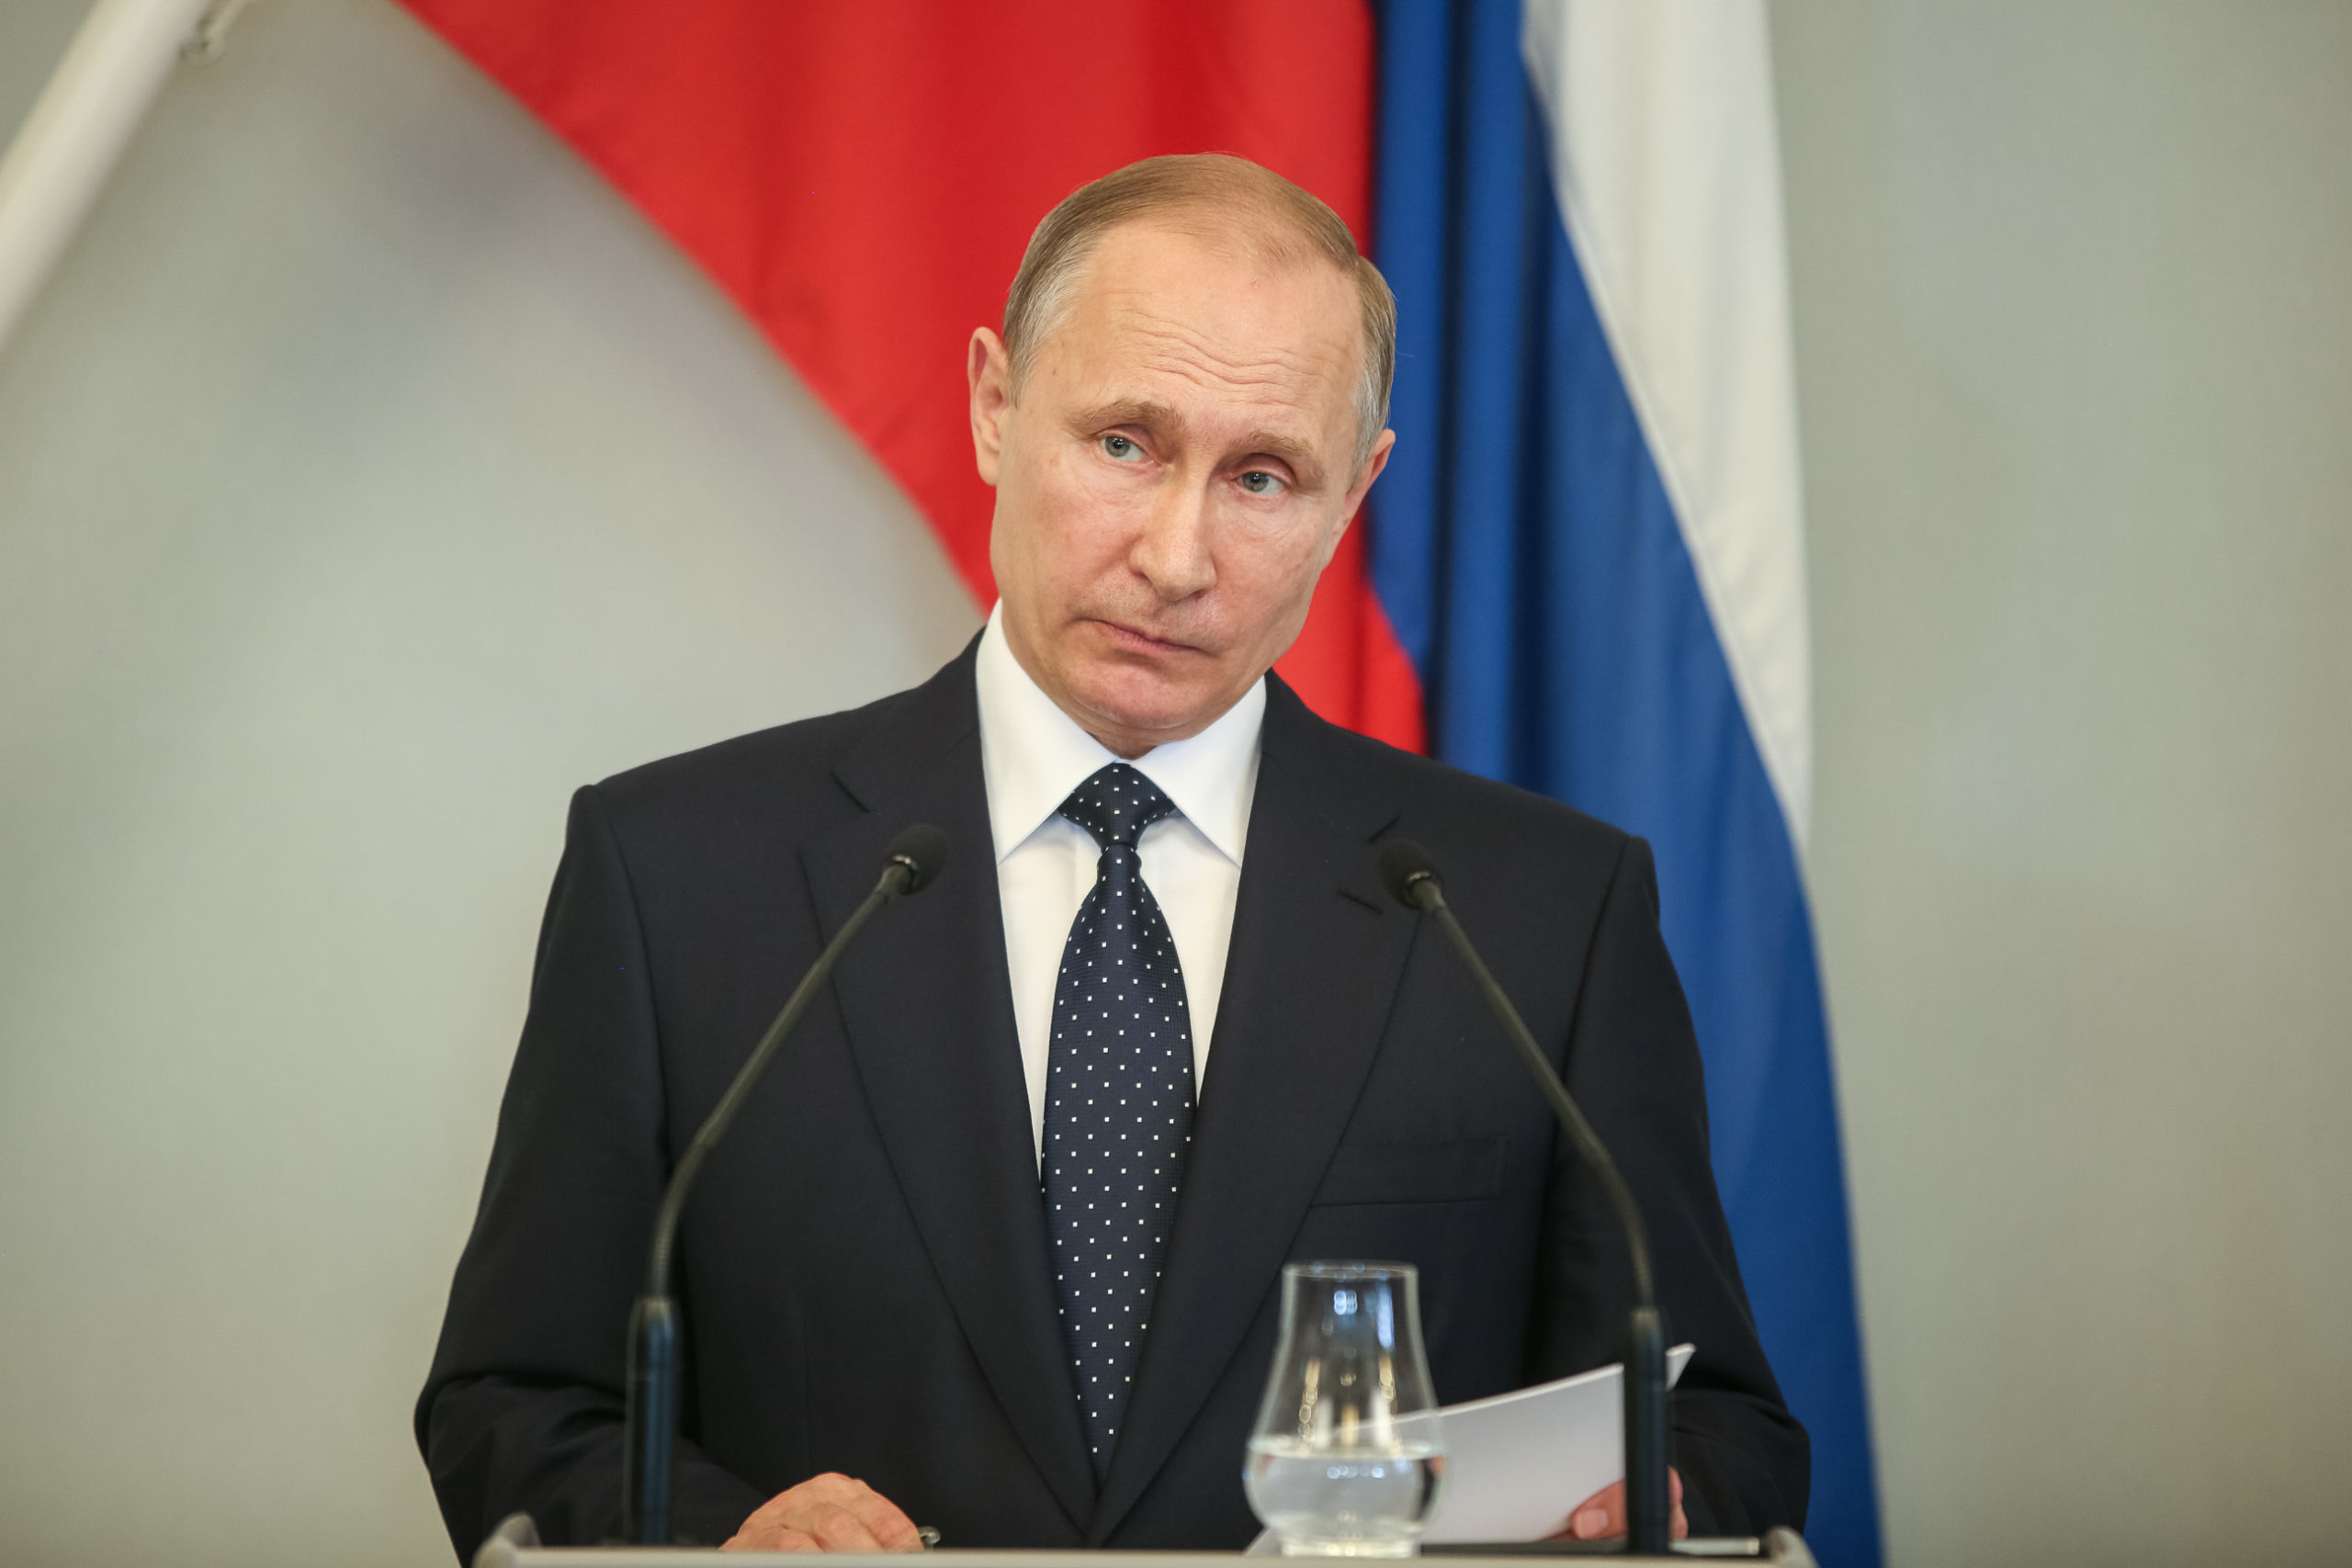 On todennäköistä, että Vladimir Putin valitaan uudelleen presidentiksi 18. maaliskuuta.